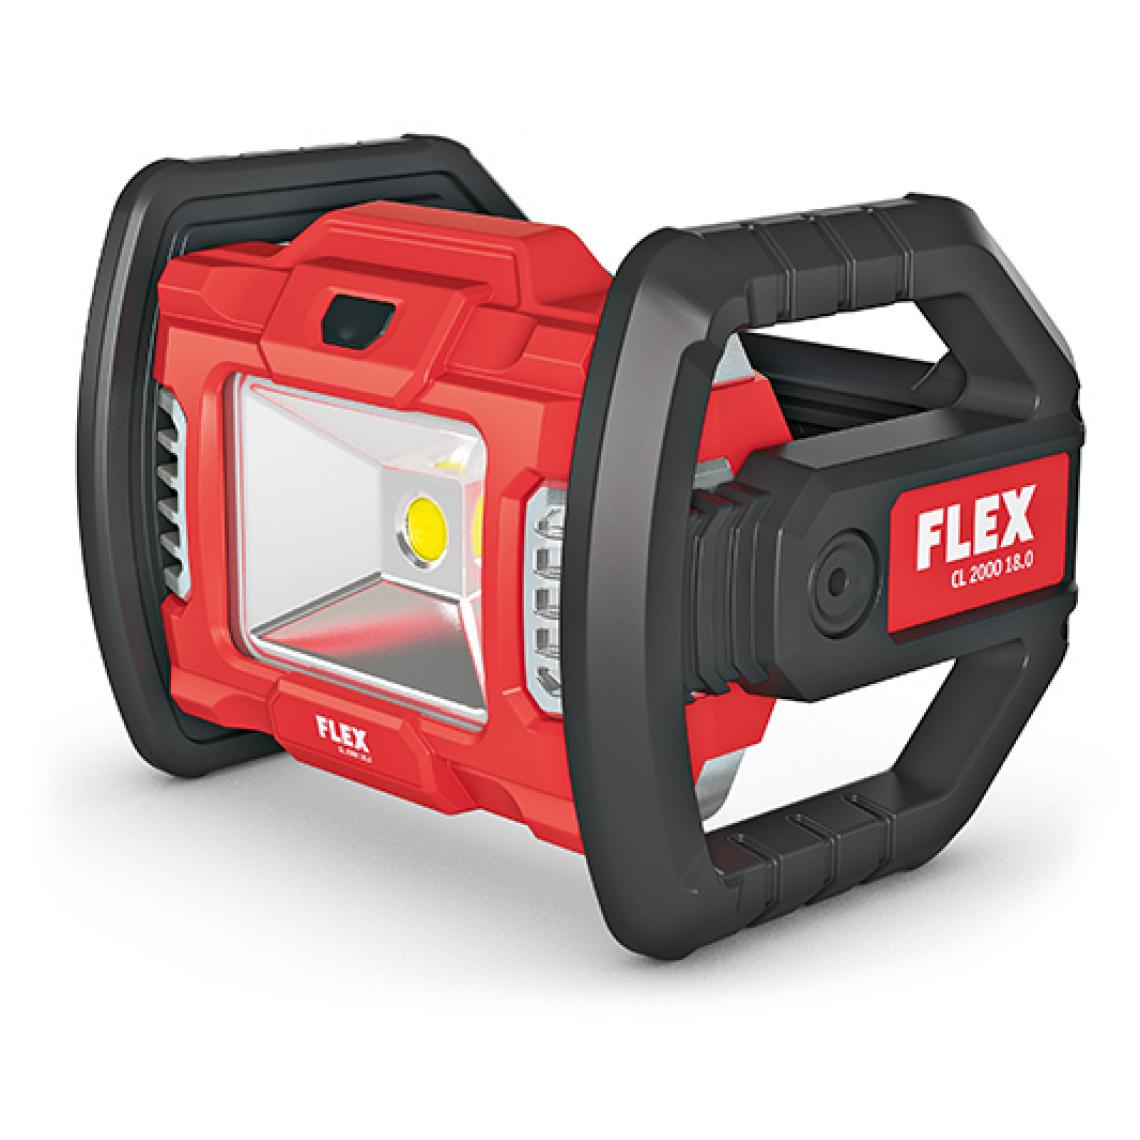 Flex - Projecteur de chantier LED 18V CL 2000 18.0 FLEX - sans batterie ni chargeur - 472921 - Lampes portatives sans fil